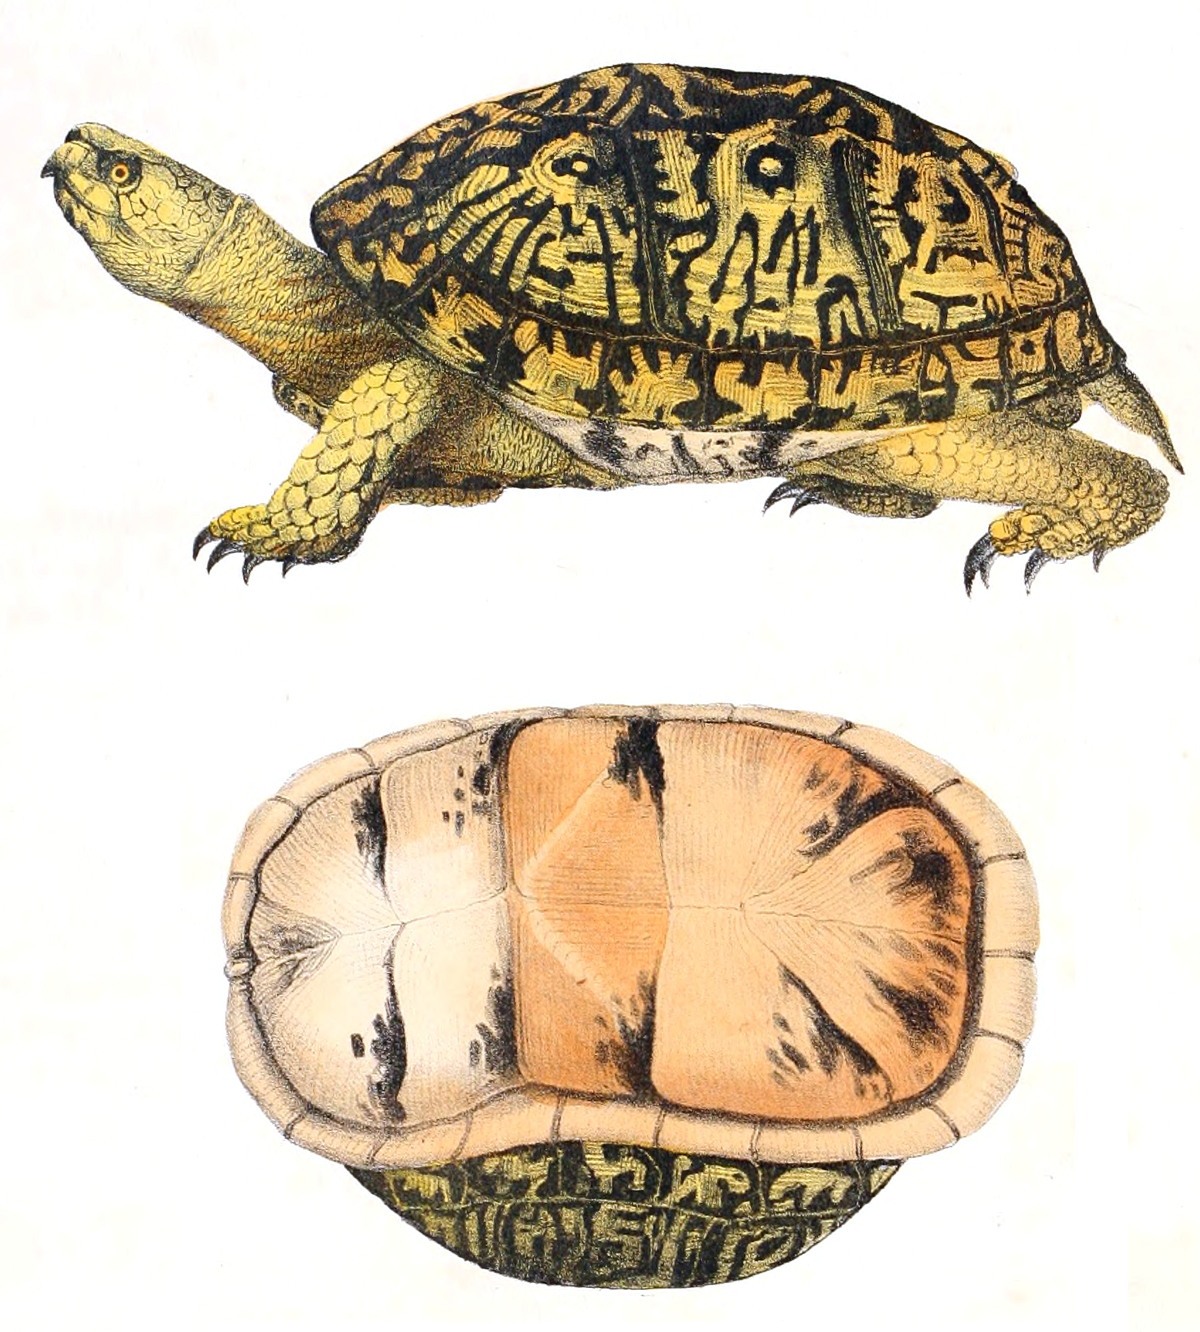 Terrapene carolina - Terrapene carolina, cái tên đầy hấp dẫn cho loài rùa bản địa của Bắc Mỹ. Hãy tìm hiểu thêm về loài rùa độc đáo này và khám phá những sự thật thú vị về nó. Một kết nối với thiên nhiên qua những hình ảnh đẹp của Terrapene carolina sẽ mang đến cho bạn những trải nghiệm tuyệt vời.